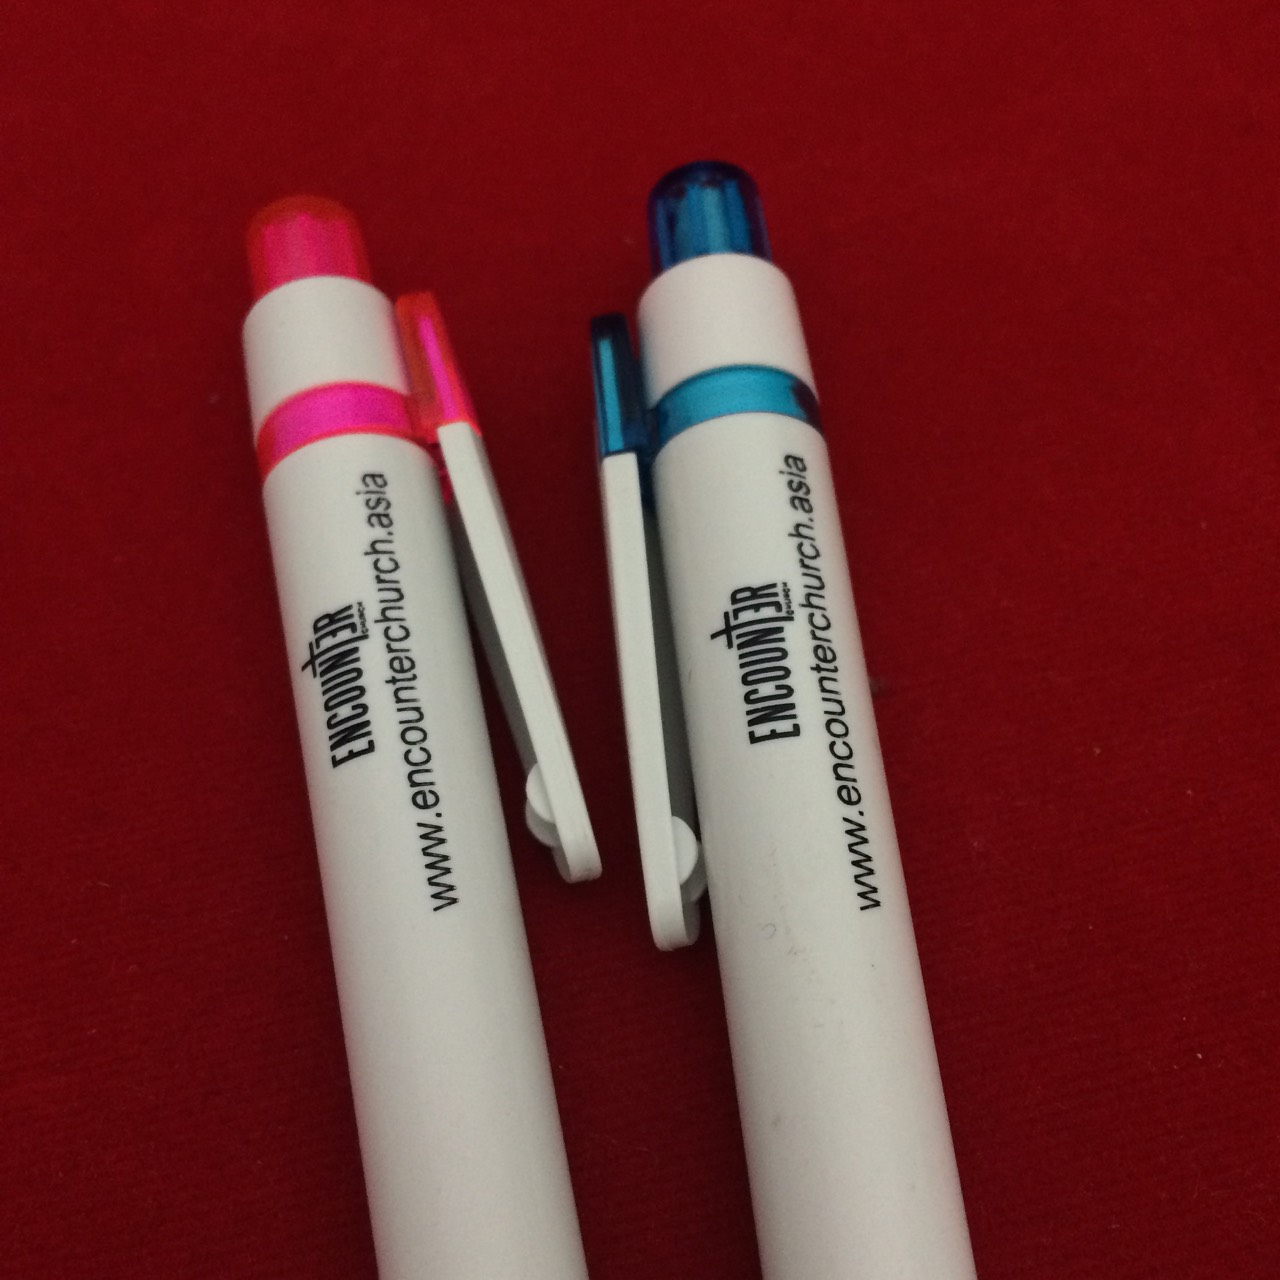 ปากกาพลาสติก PP143